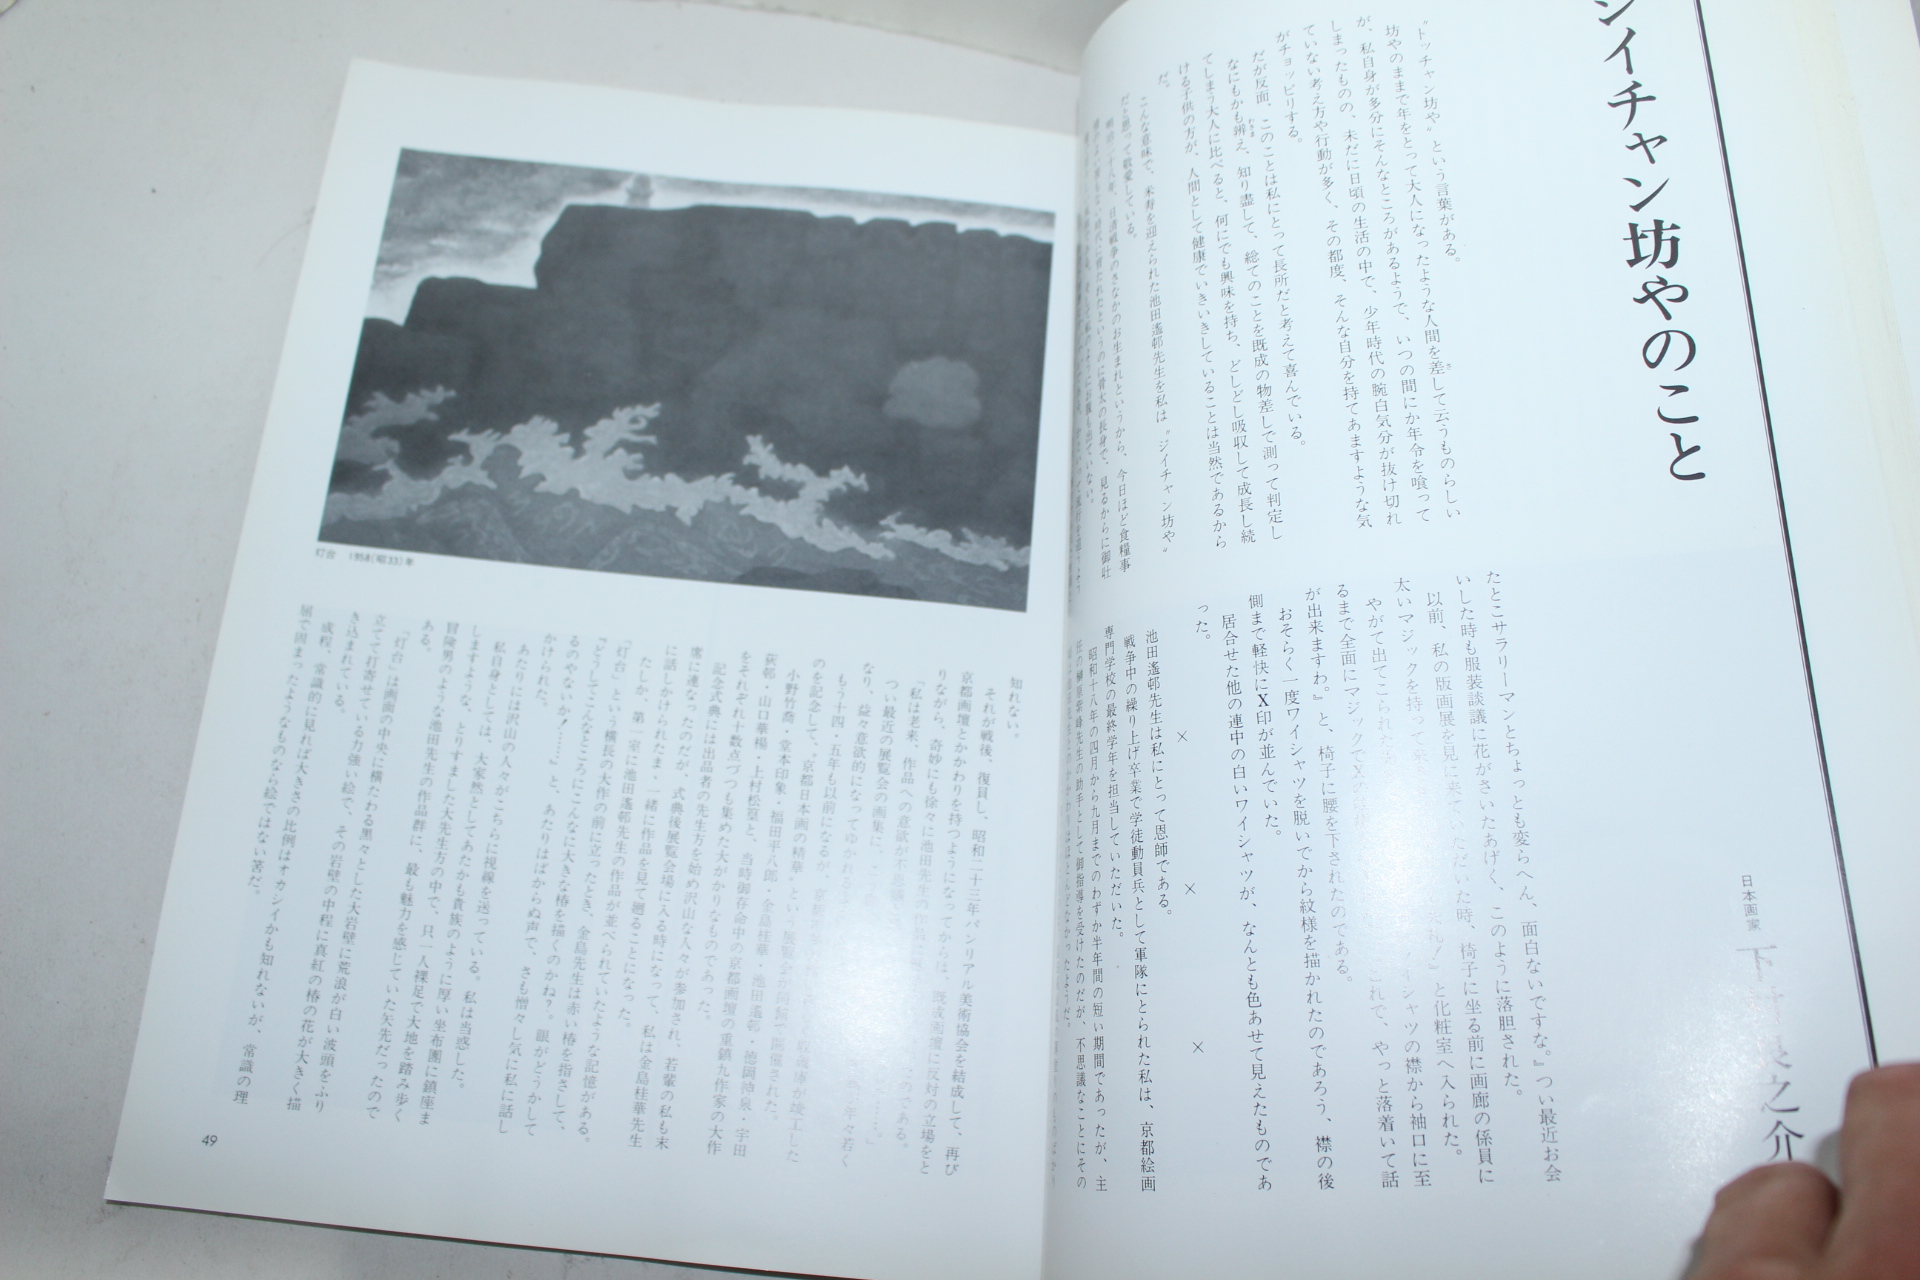 1984년 일본미술잡지 삼채(三彩) 7월호